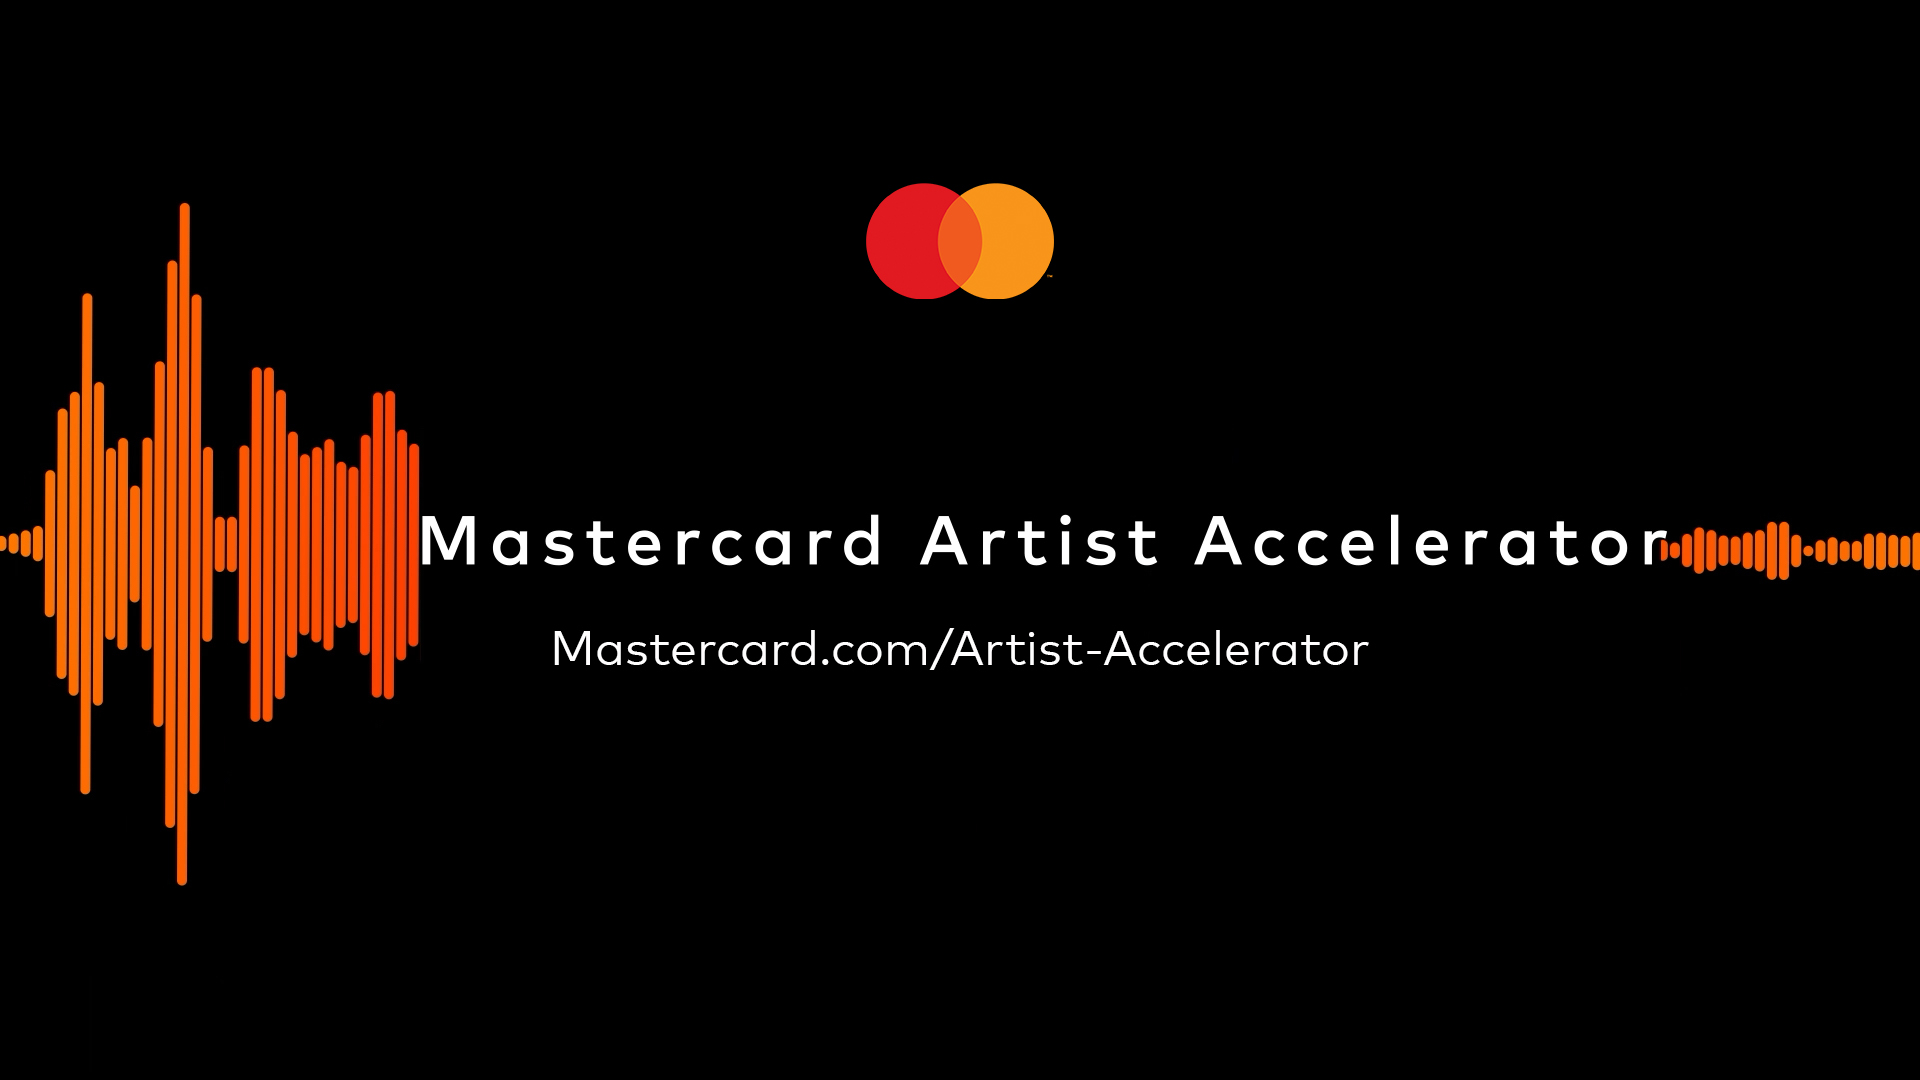 Mastercard anuncia el Acelerador de Artistas